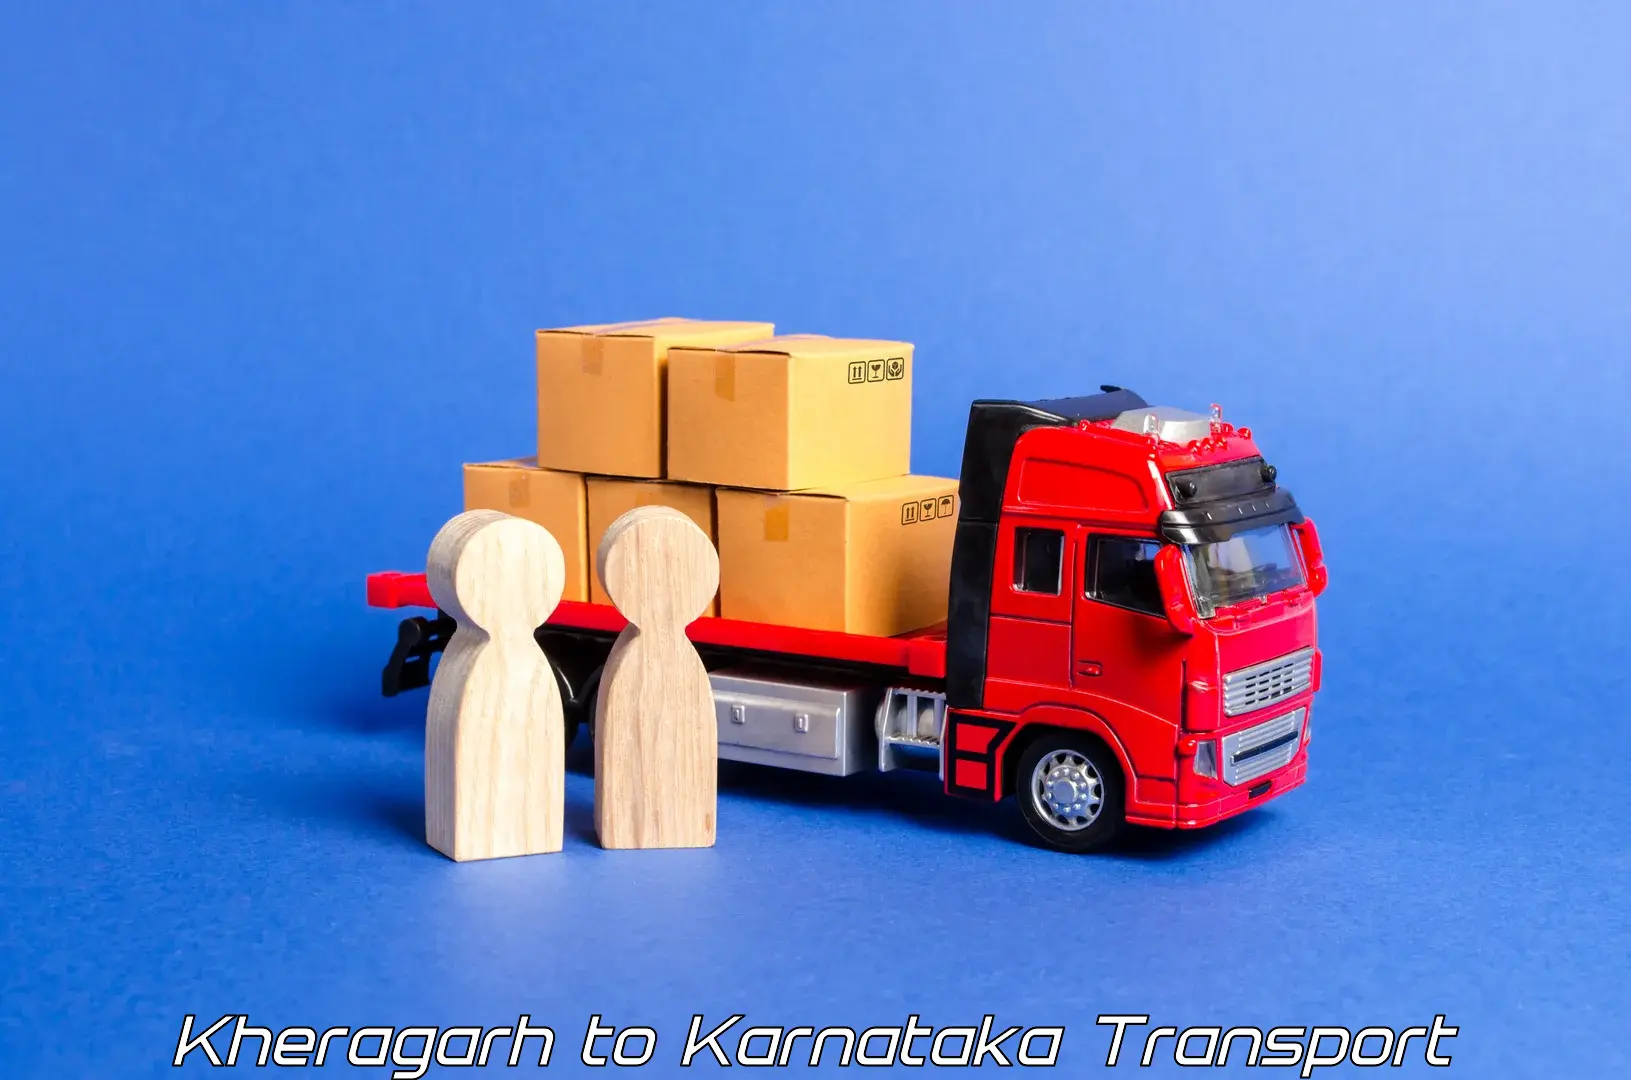 Transportation solution services Kheragarh to Kunigal